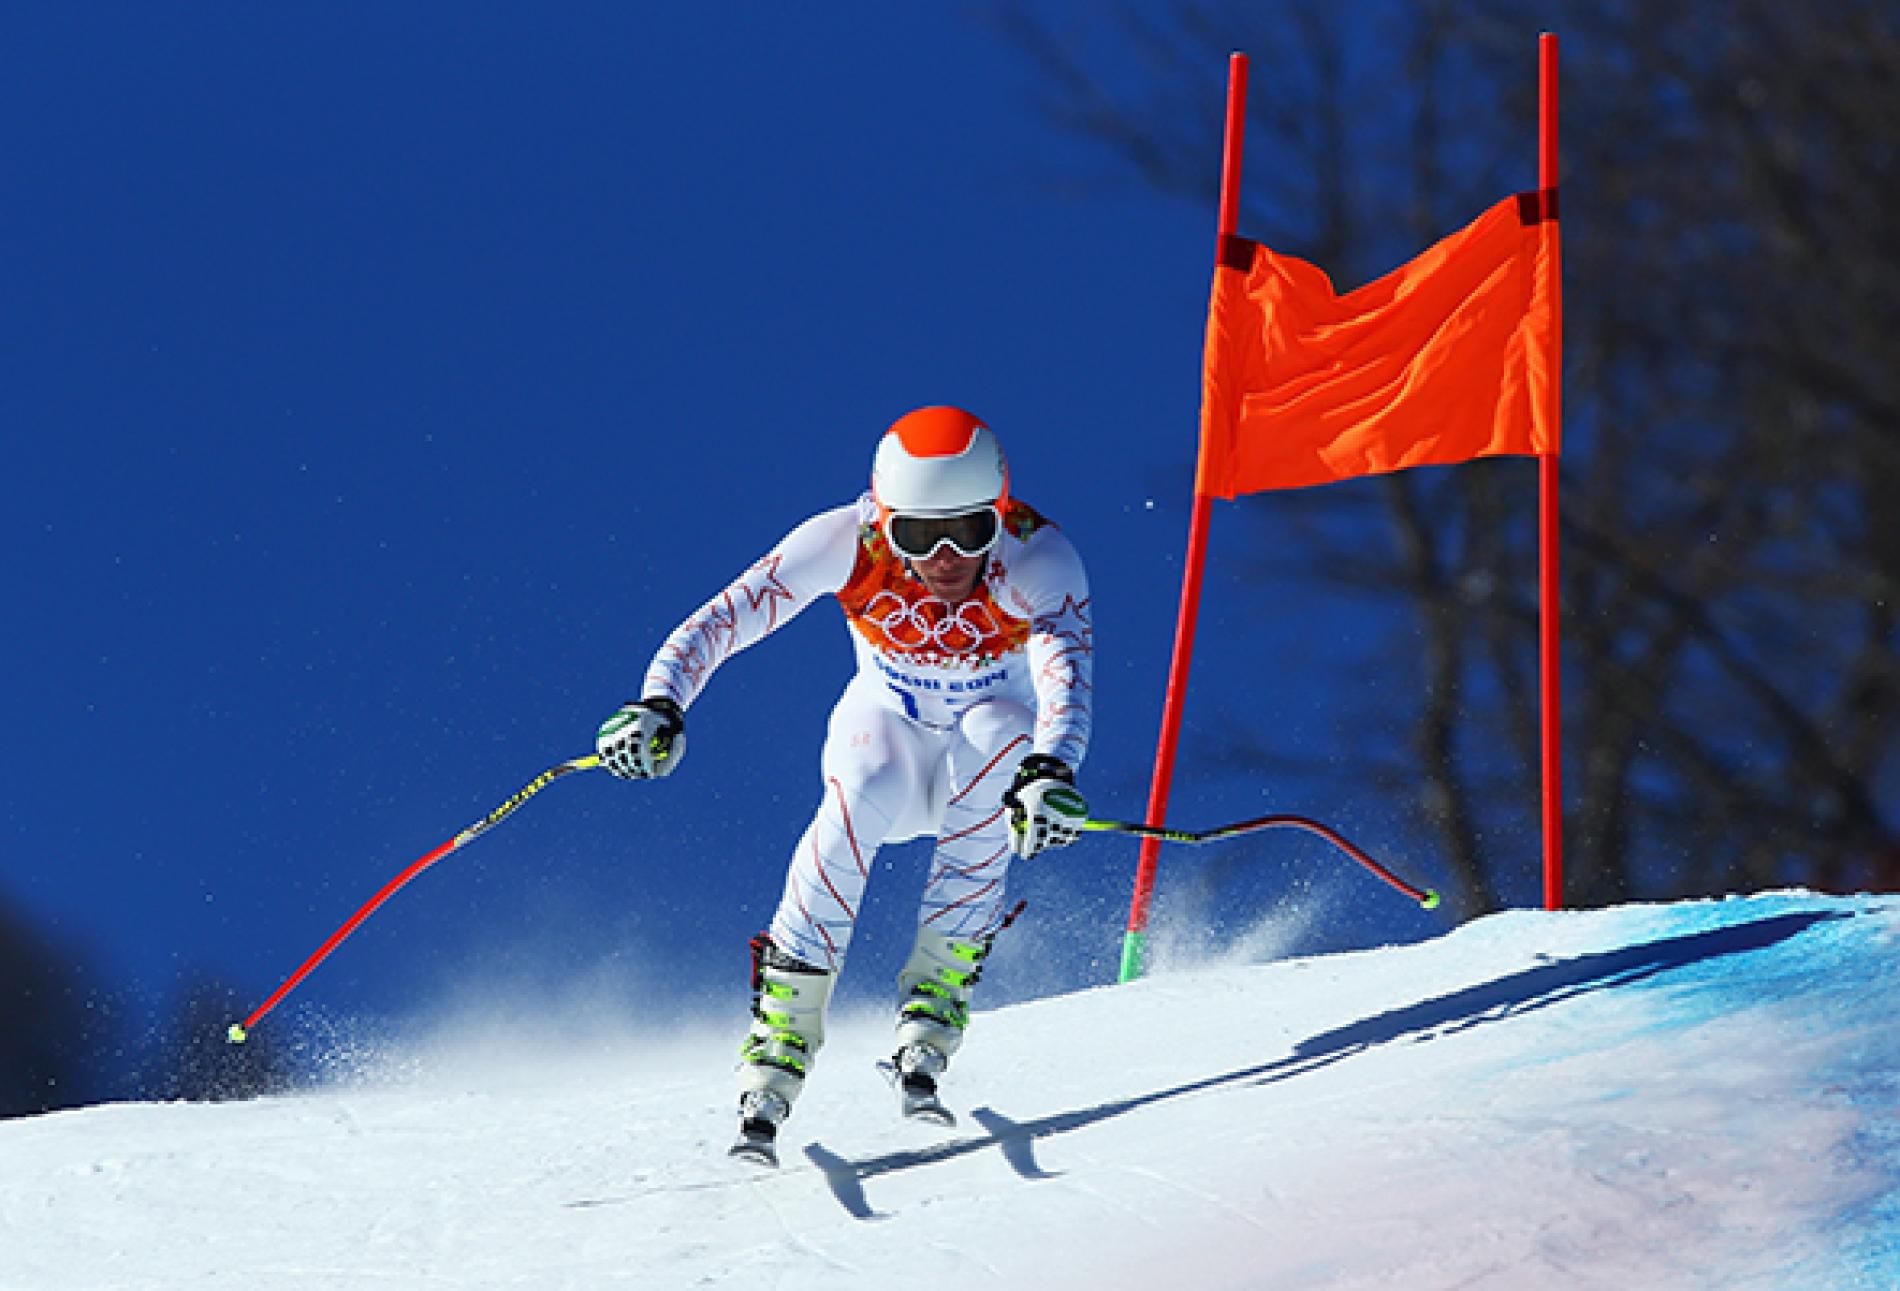 Vận động viên trượt truyết tranh tài tại Thế vận hội mùa đông Sochi 2014 ở Nga. Ảnh: National Geographic.